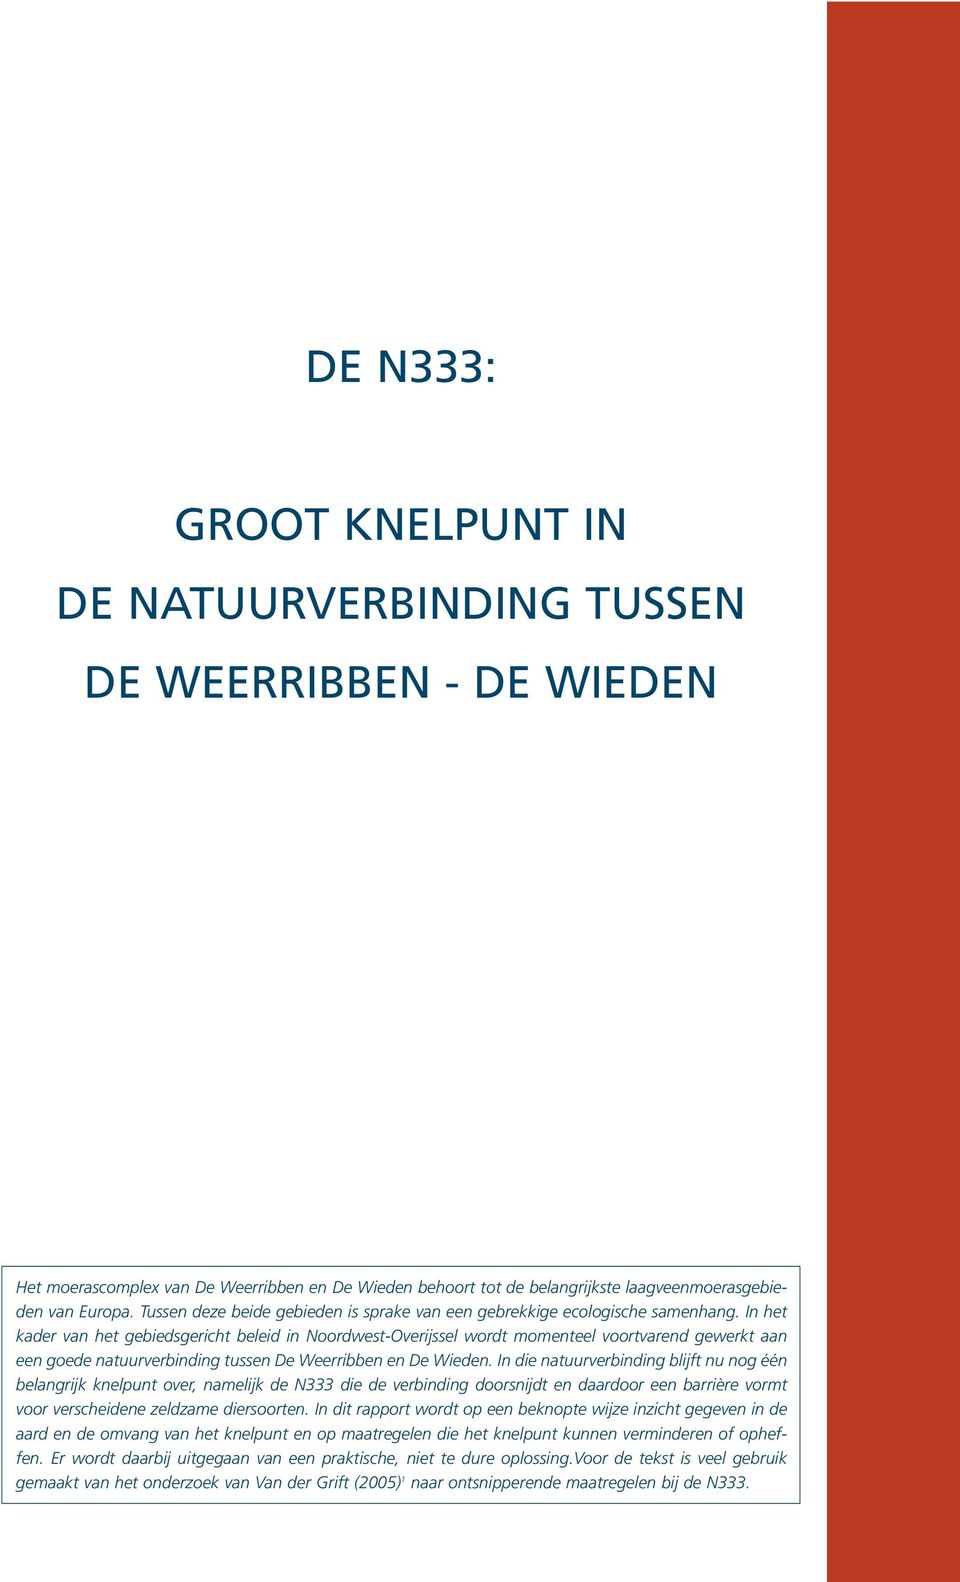 In het kader van het gebiedsgericht beleid in Noordwest-Overijssel wordt momenteel voortvarend gewerkt aan een goede natuurverbinding tussen De Weerribben en De Wieden.